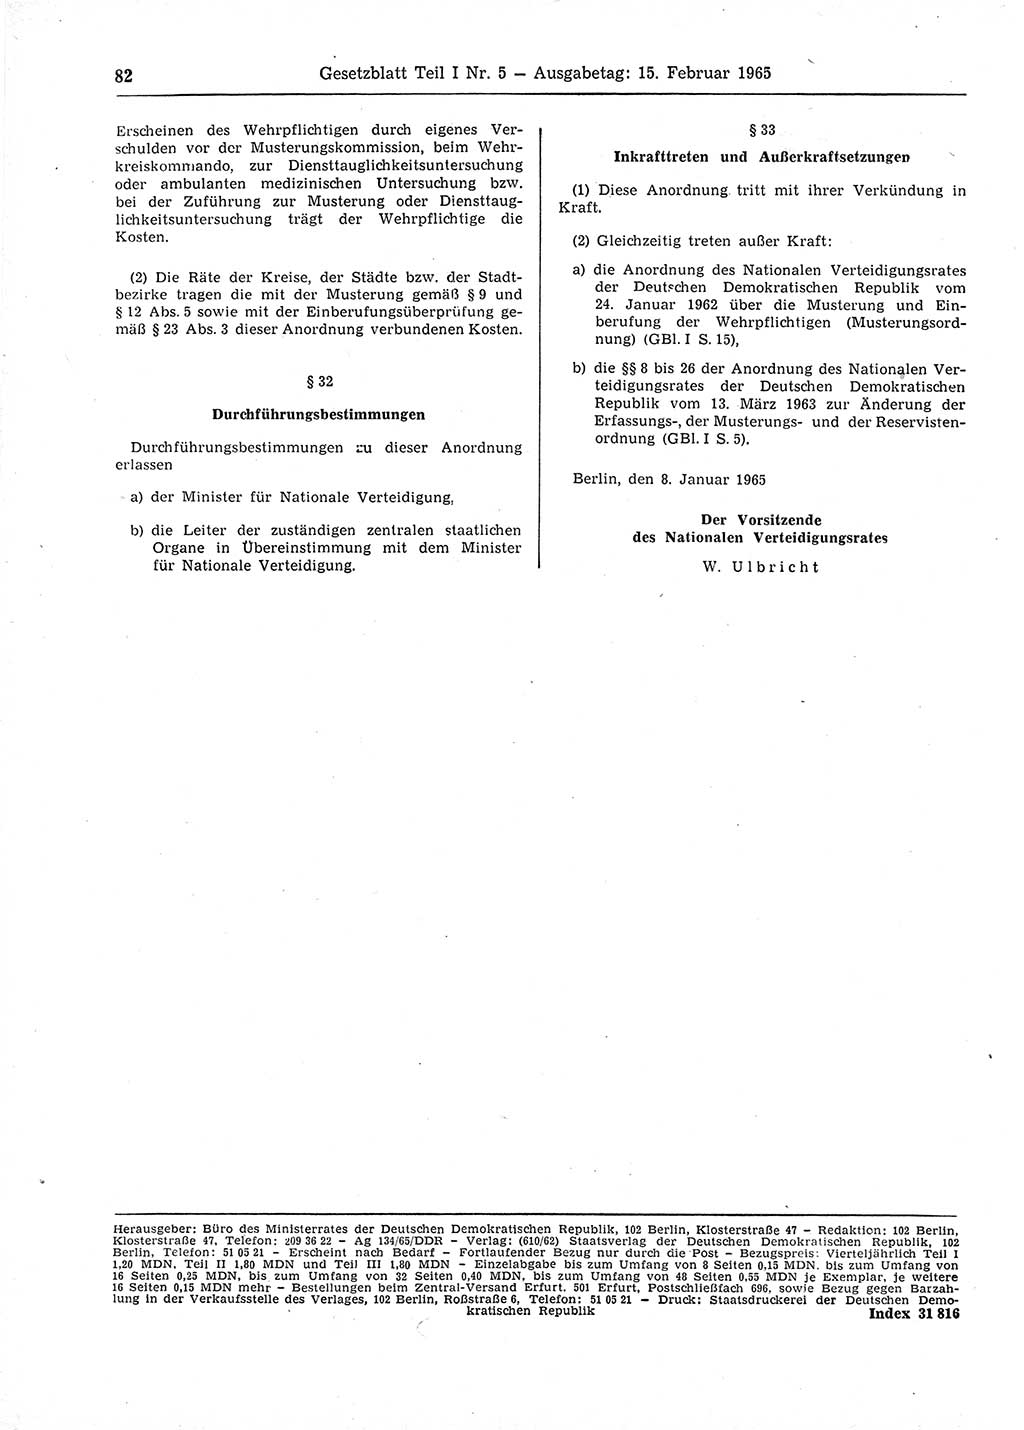 Gesetzblatt (GBl.) der Deutschen Demokratischen Republik (DDR) Teil Ⅰ 1965, Seite 82 (GBl. DDR Ⅰ 1965, S. 82)